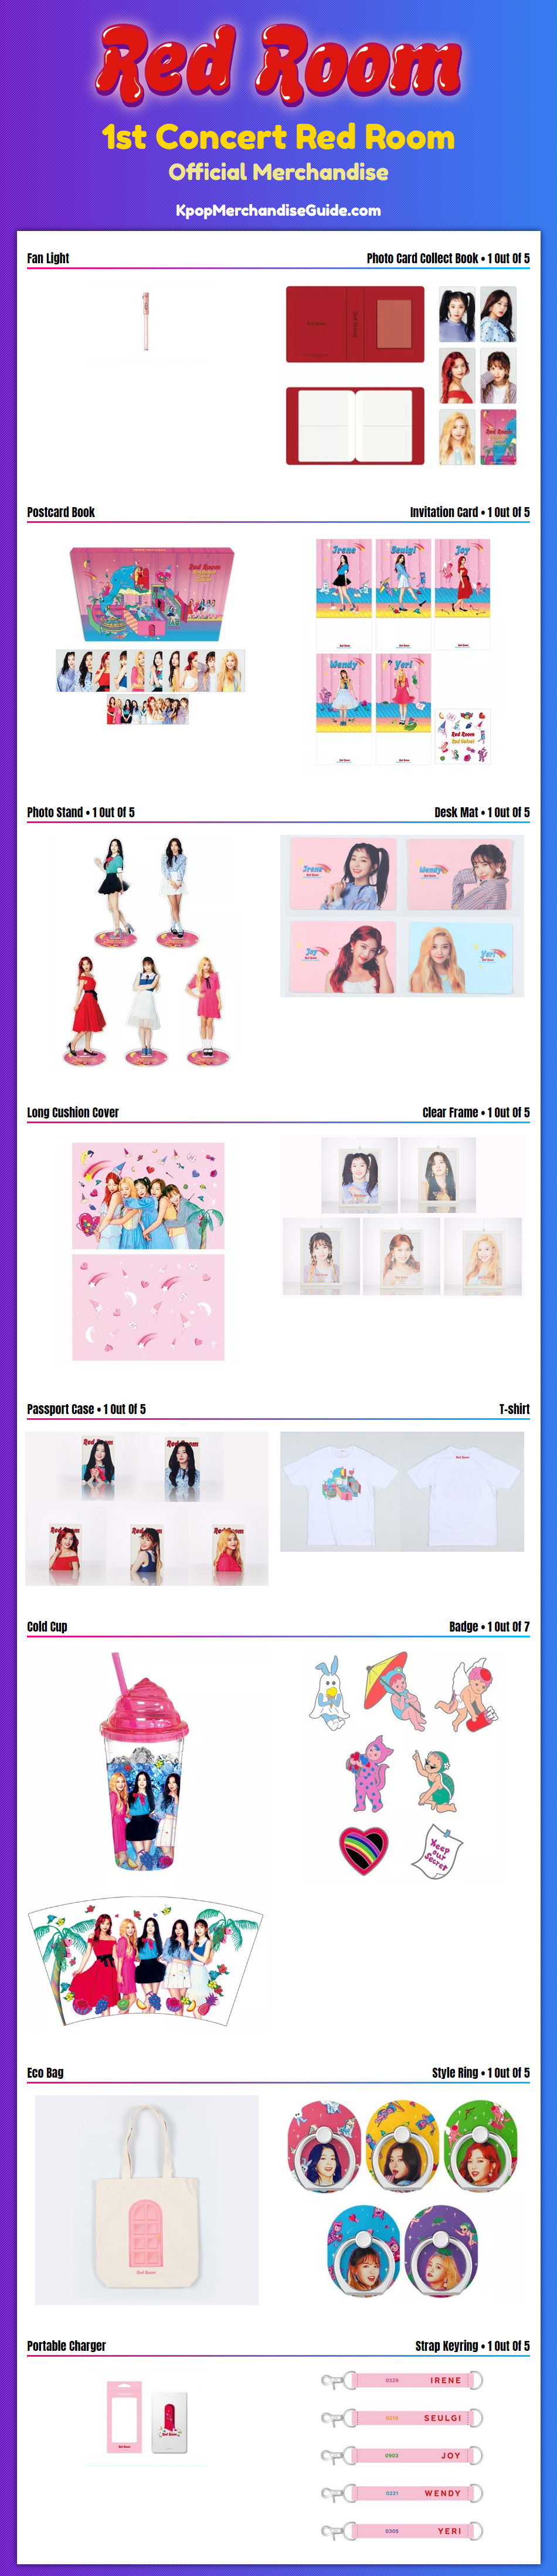 Red Velvet 1st Concert Red Room Merchandise